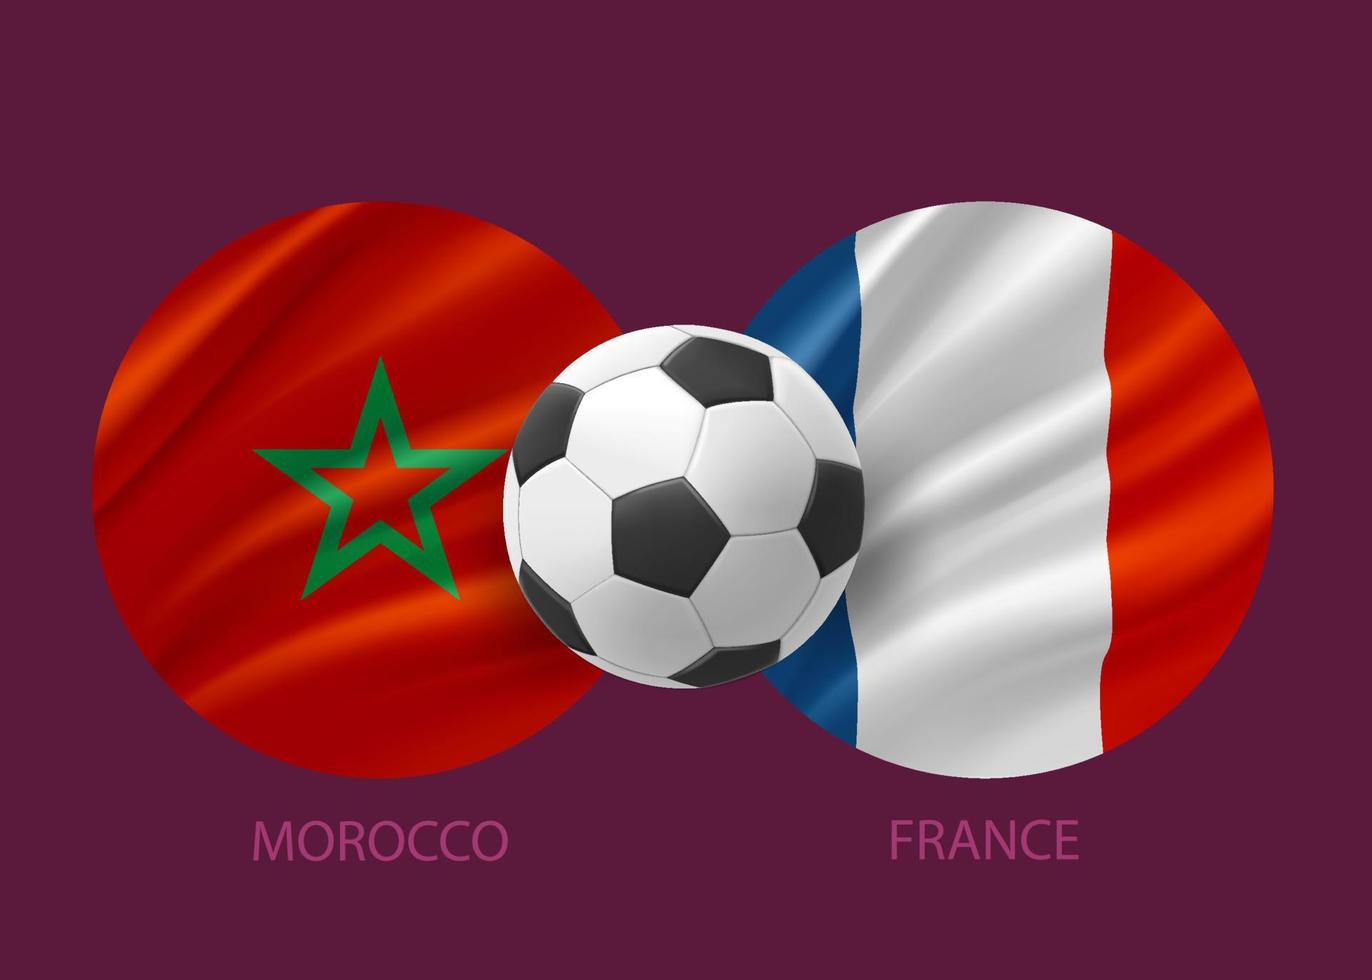 concept de match de football maroc contre france. illustration vectorielle 3d vecteur